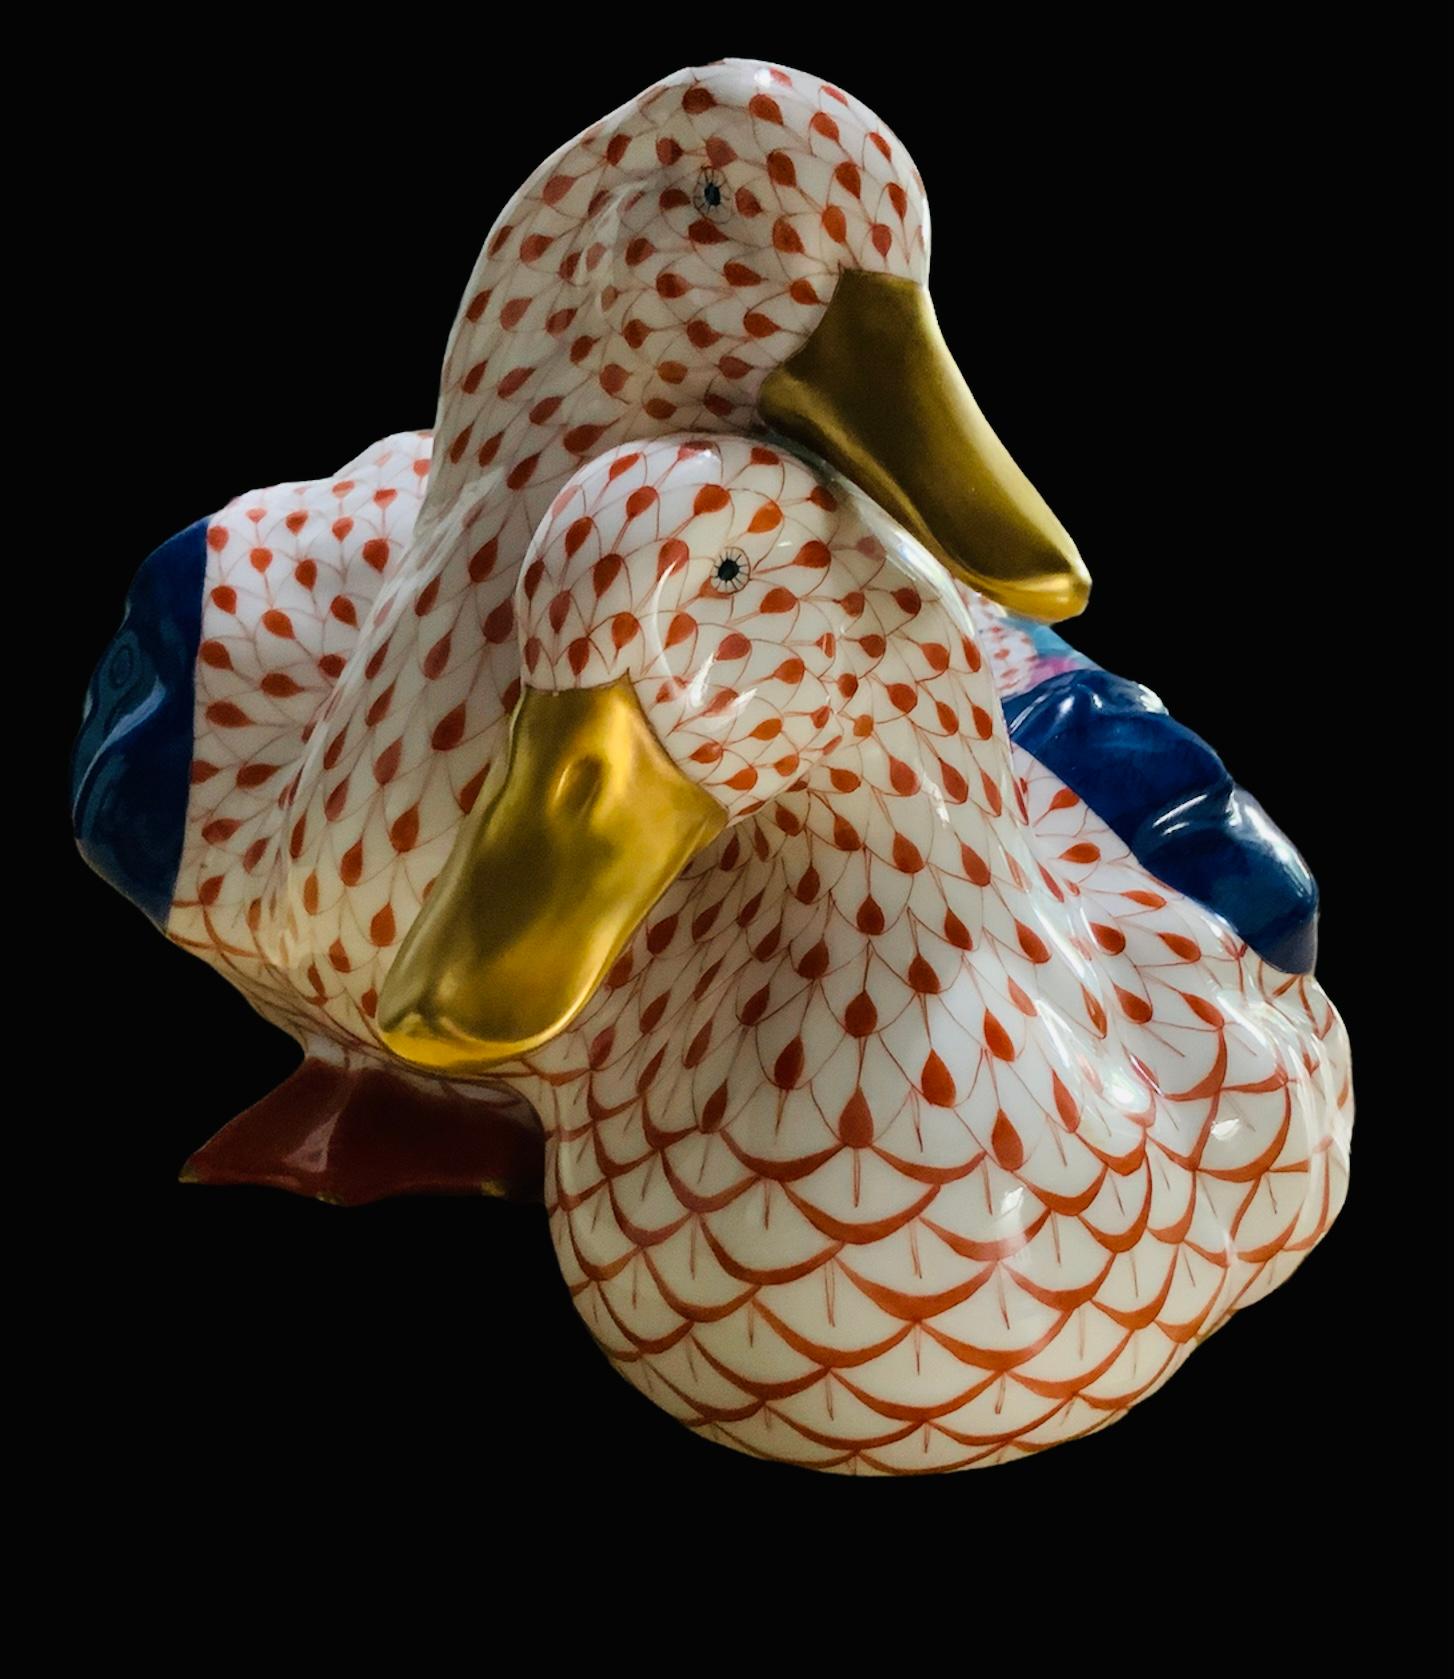 Es handelt sich um ein Paar handbemalte Herender Porzellan-Enten mittlerer Größe. Ihr Hintergrund ist weiß mit orangefarbenem Fischschuppen-Netzmuster. Ihre Flügel sind handbemalt in Marineblau, Rosa und Türkis. Ihre Schwanzfedern sind orange, gold,